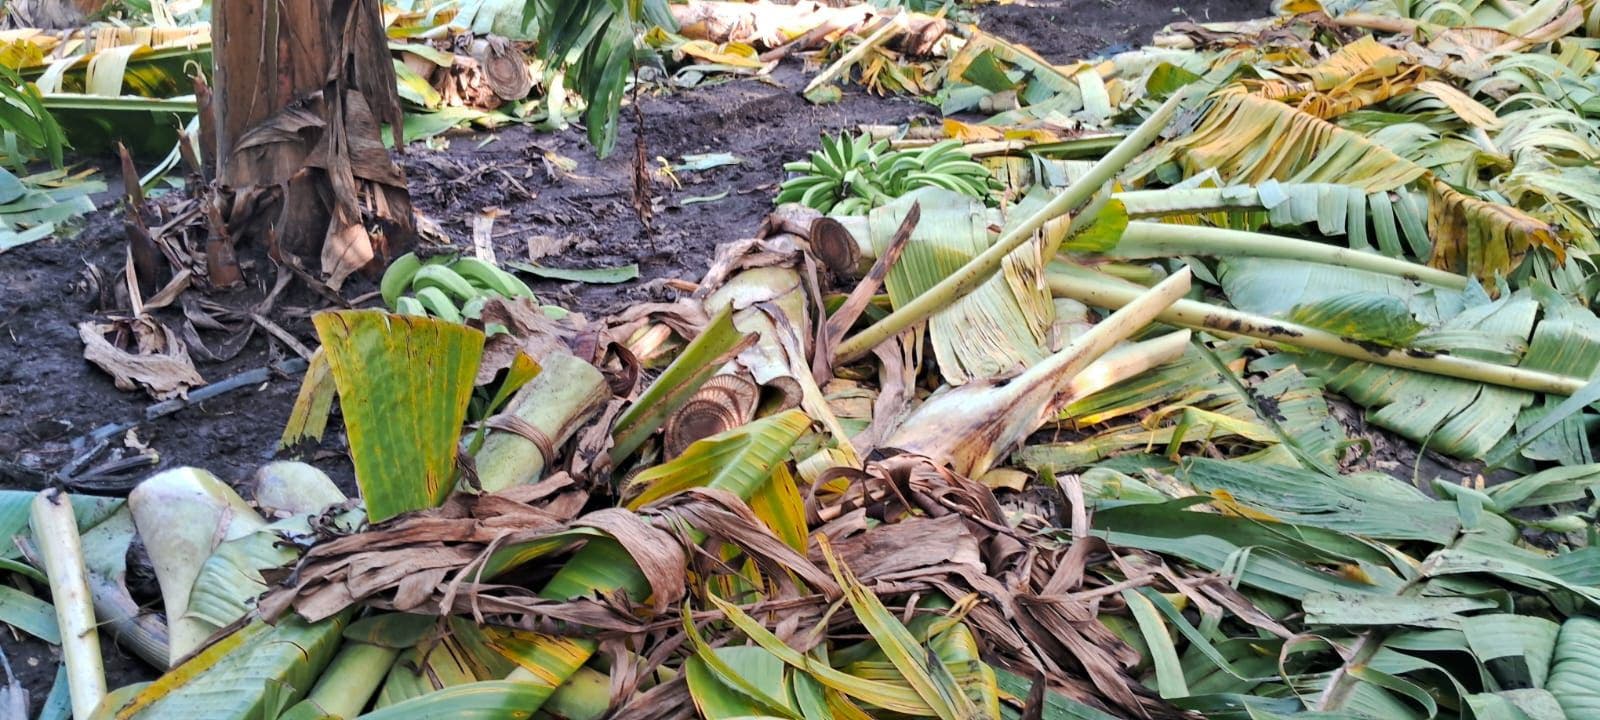 Gobierno apoyará productores de plátanos afectados por los fenómenos atmosféricos de los últimos días